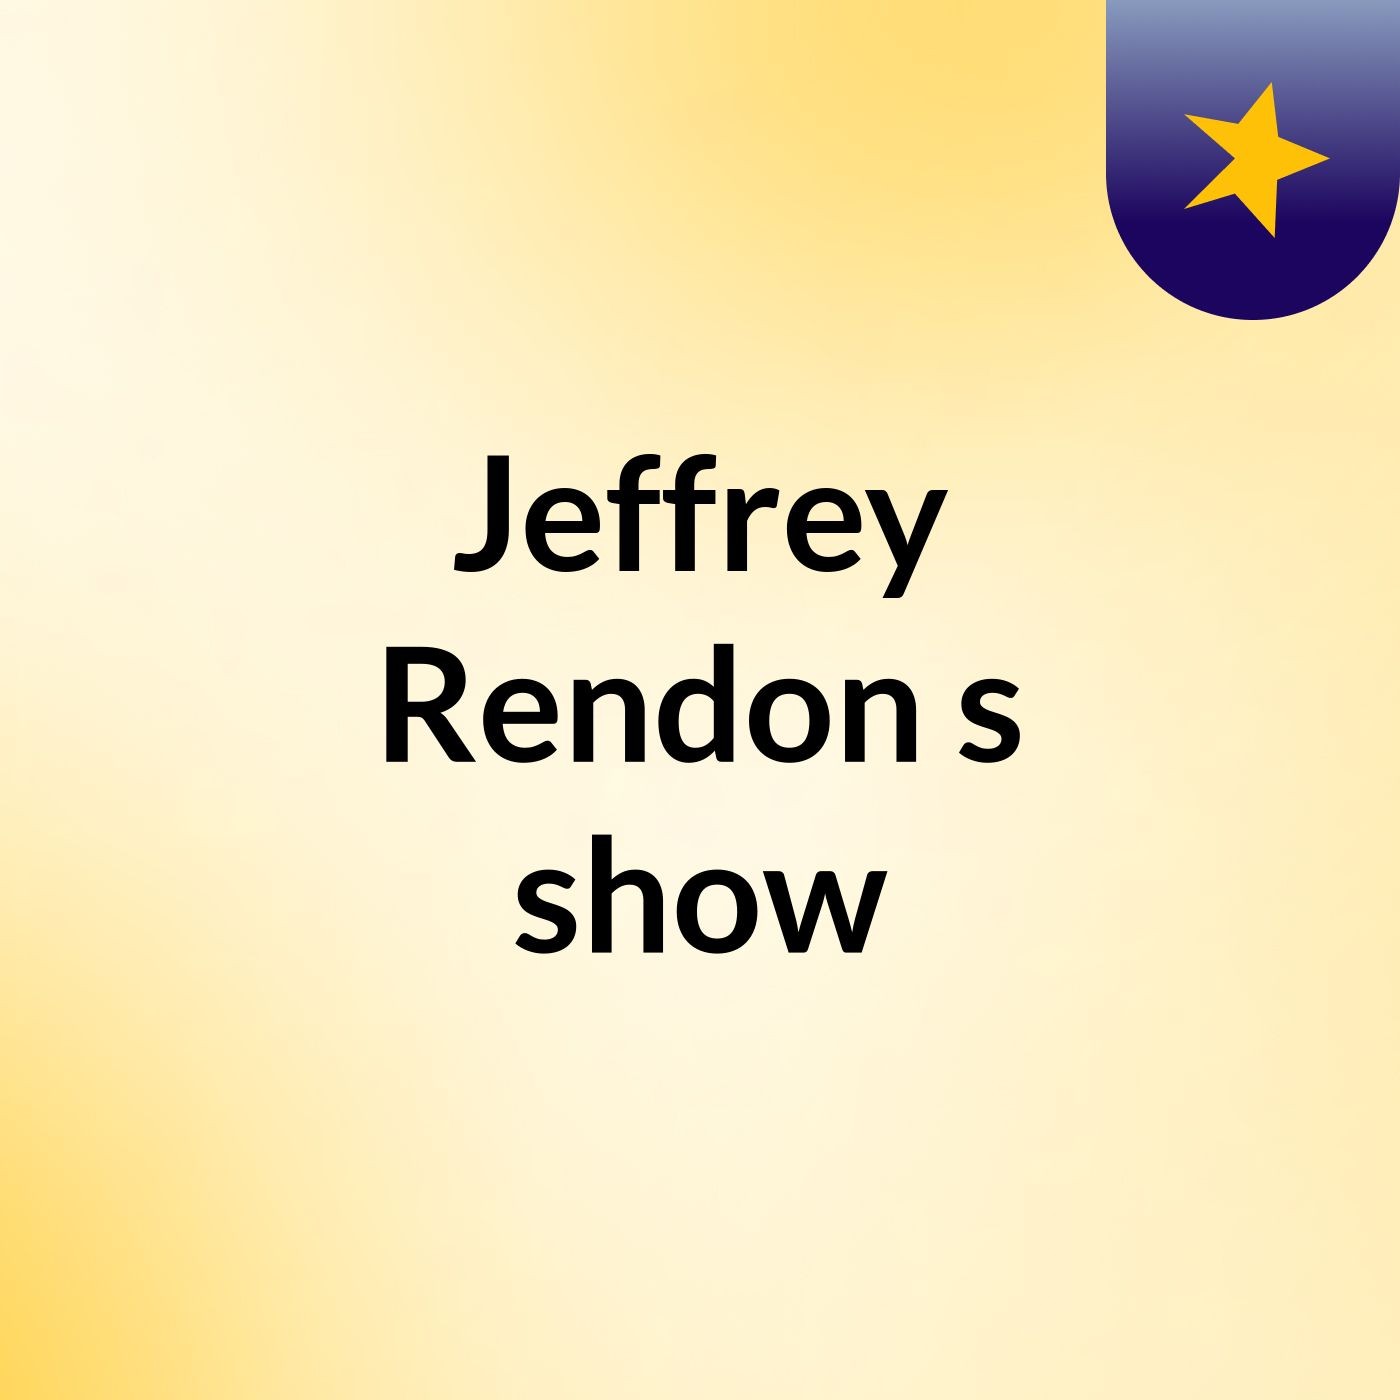 Jeffrey Rendon's show